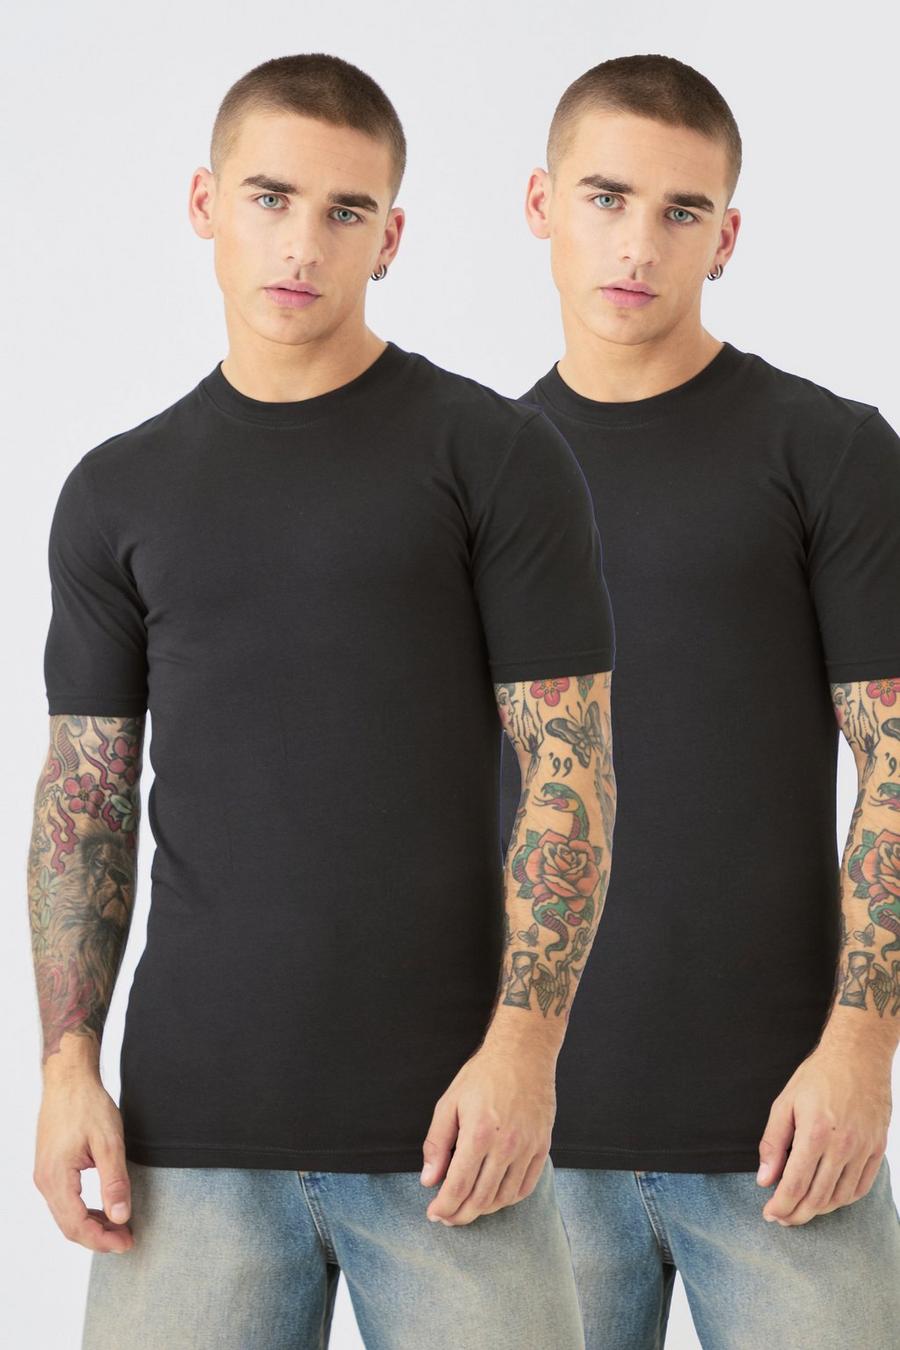 T-shirt attillate - set di 2 paia, Black